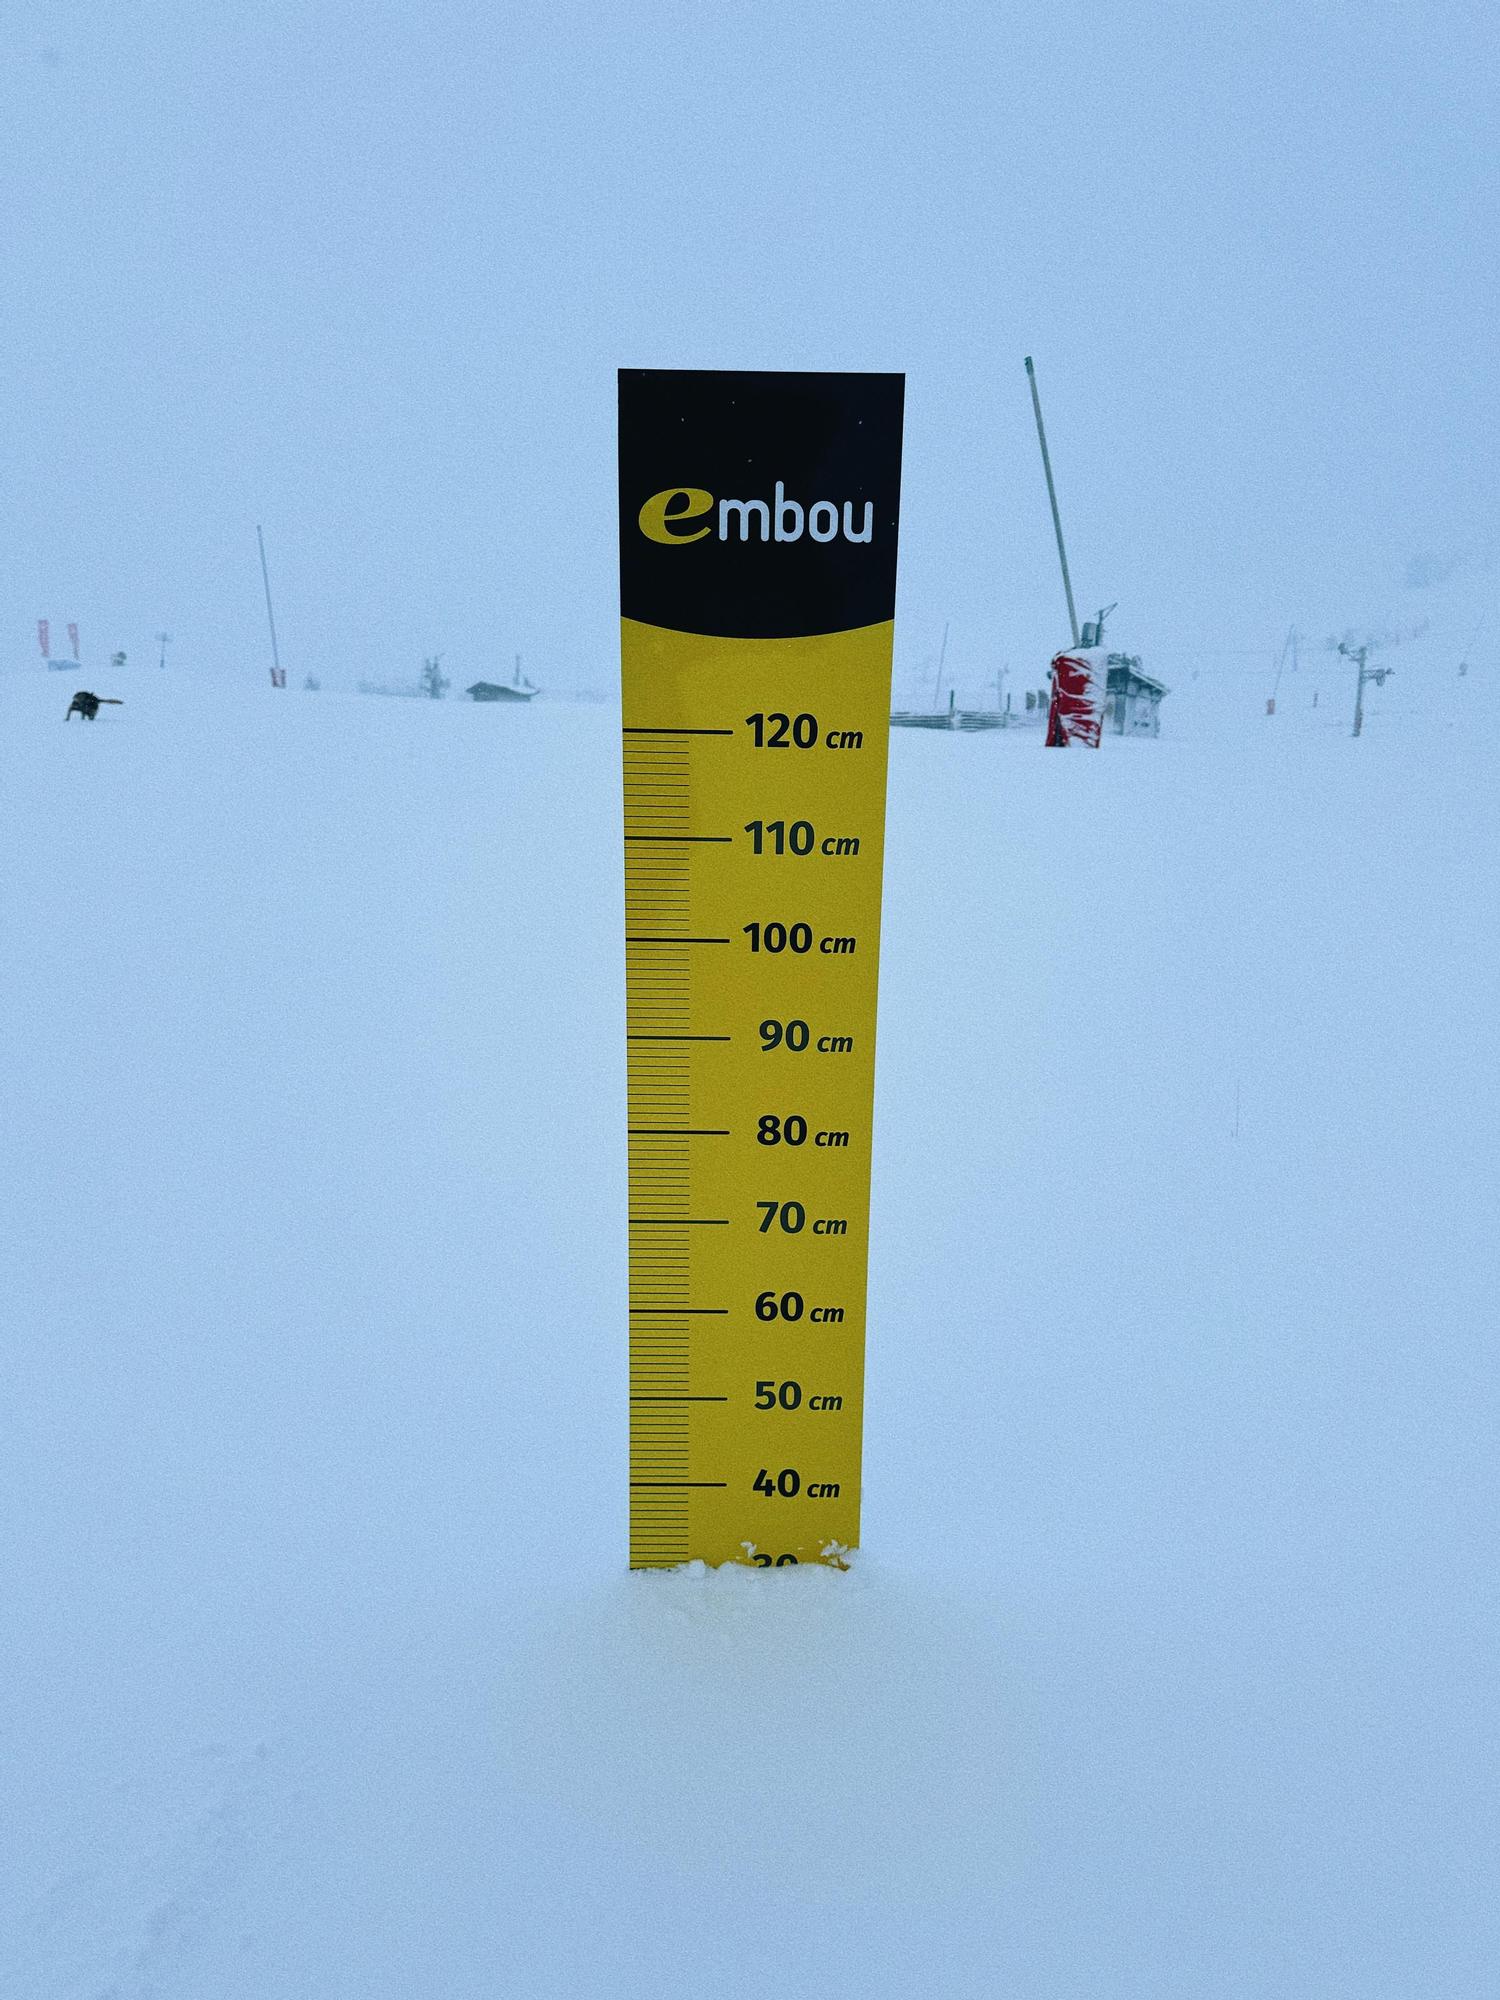 EN IMÁGENES | Una gran nevada deja 30 centímetros de nieve en el Pirineo